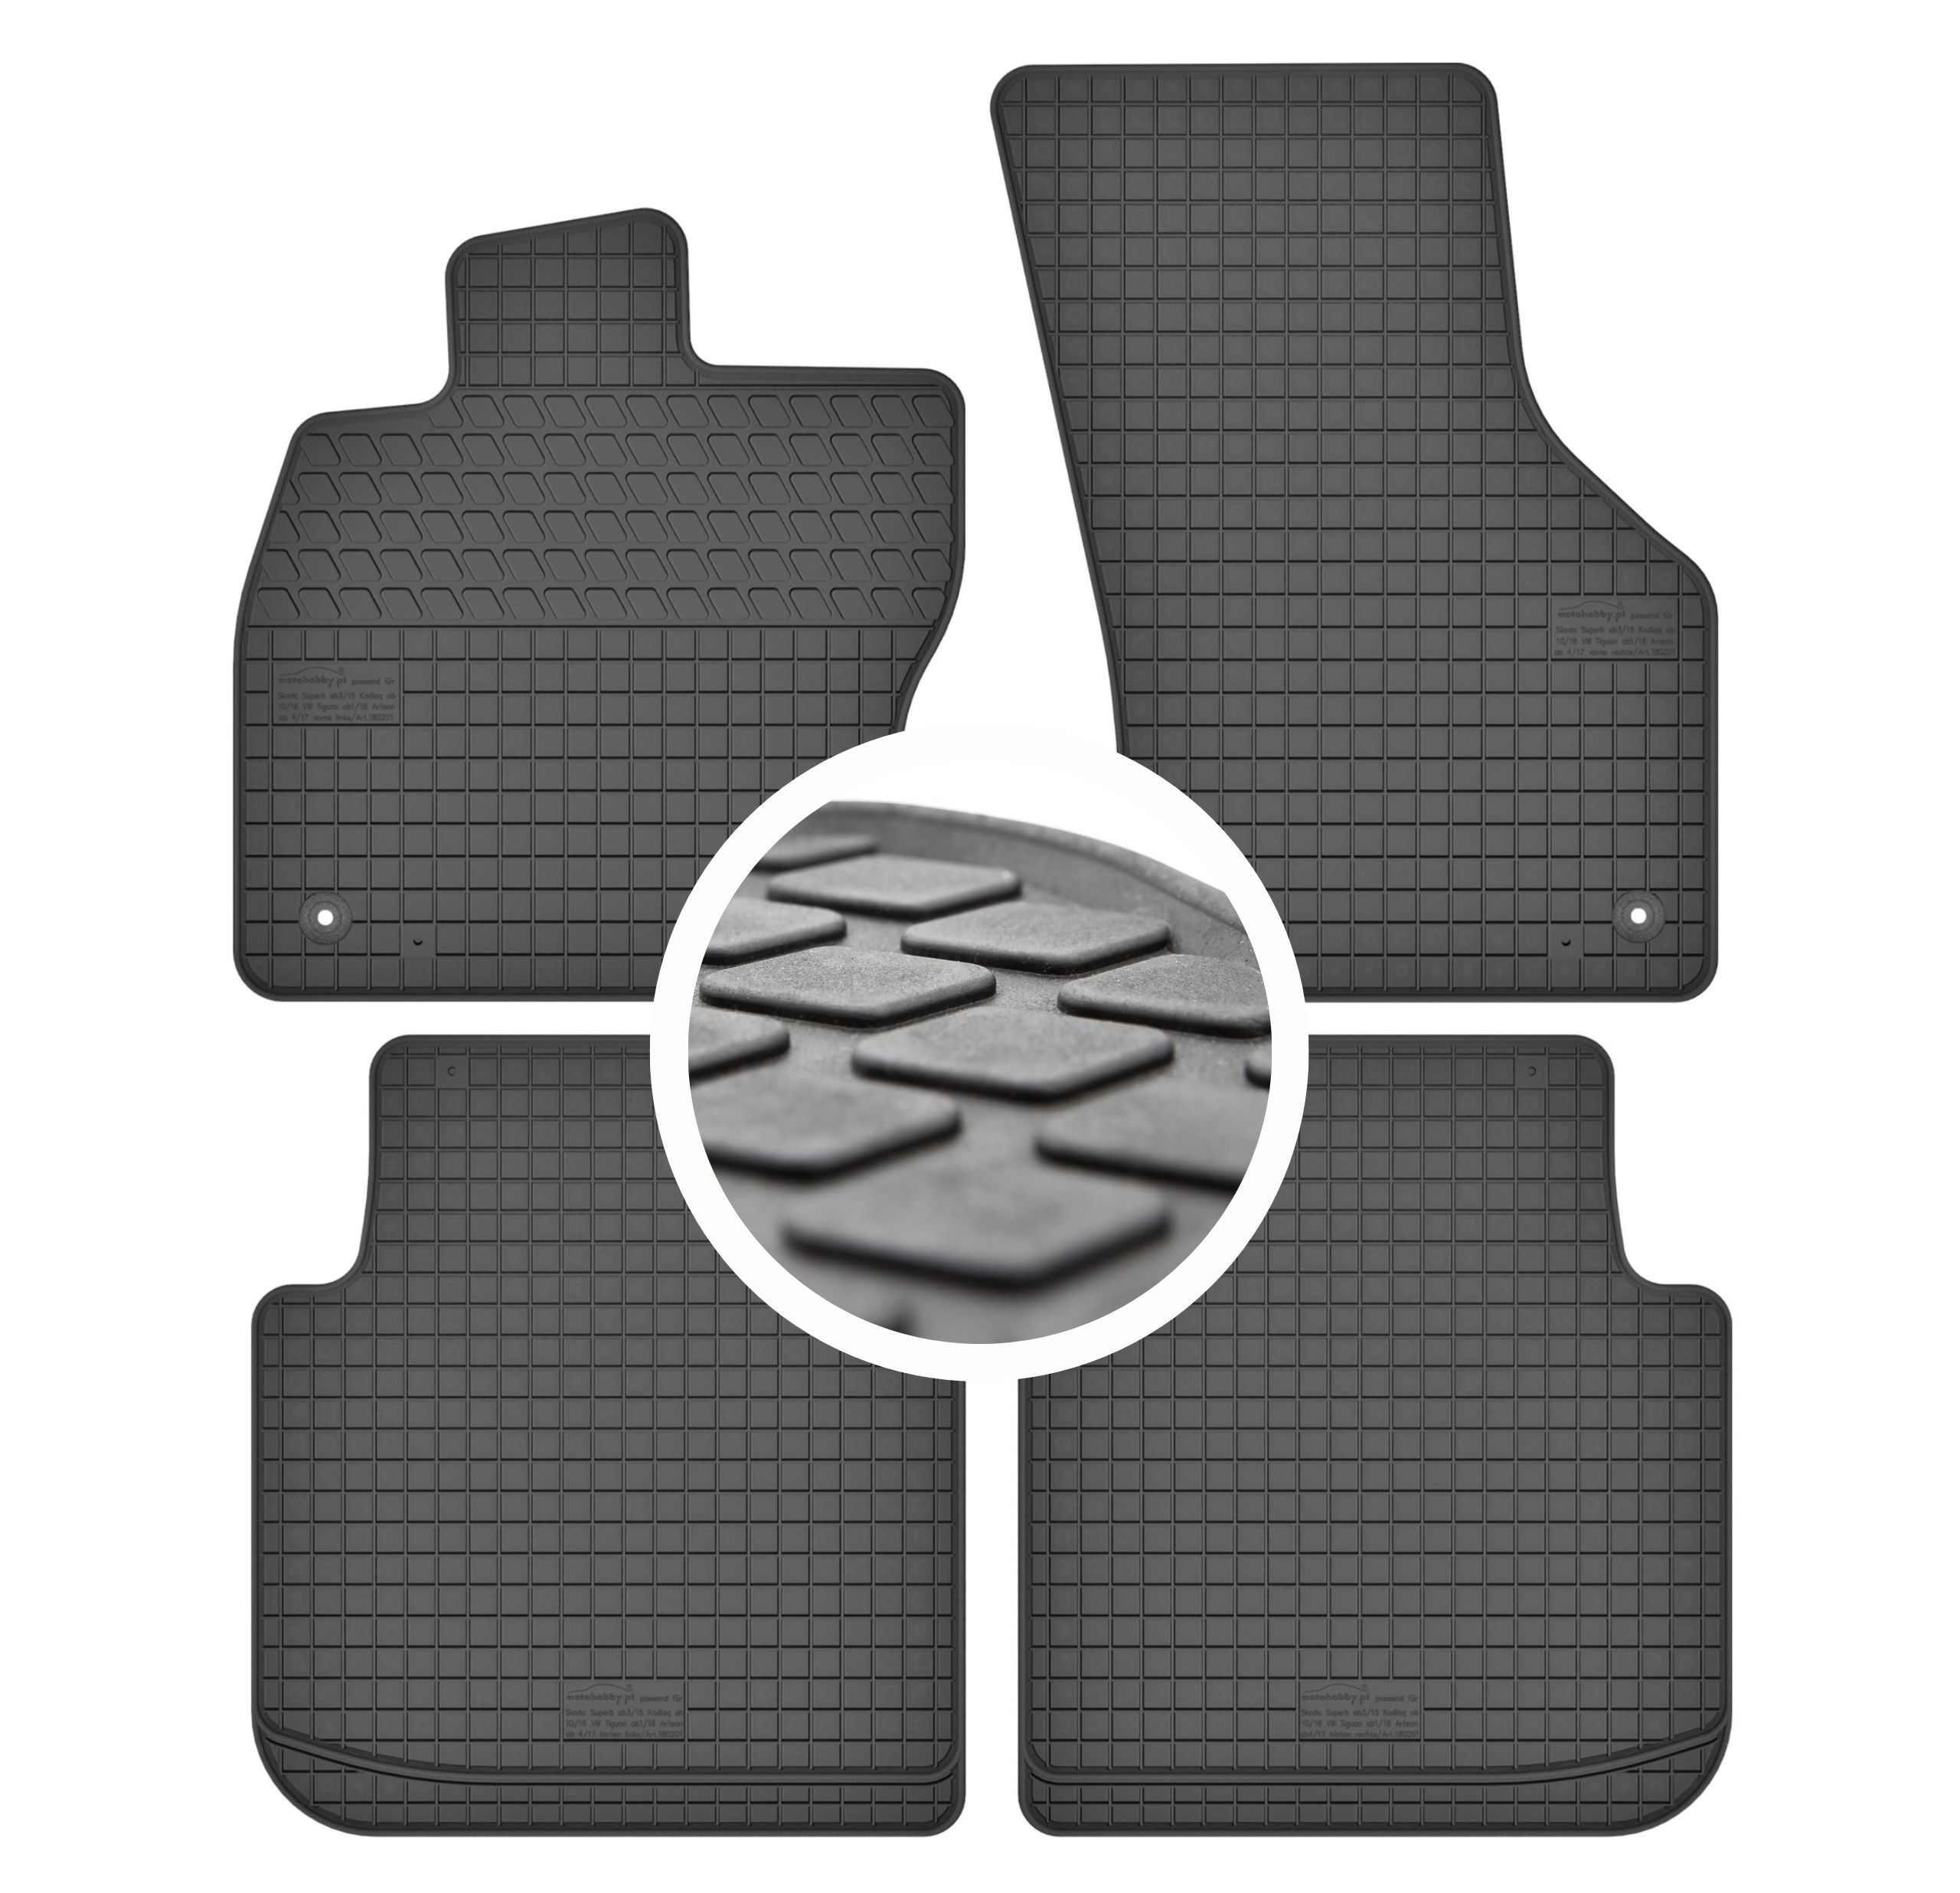 Hohe Gummi-Fußmatten passend für Skoda Superb III ab 2015 4-tlg.